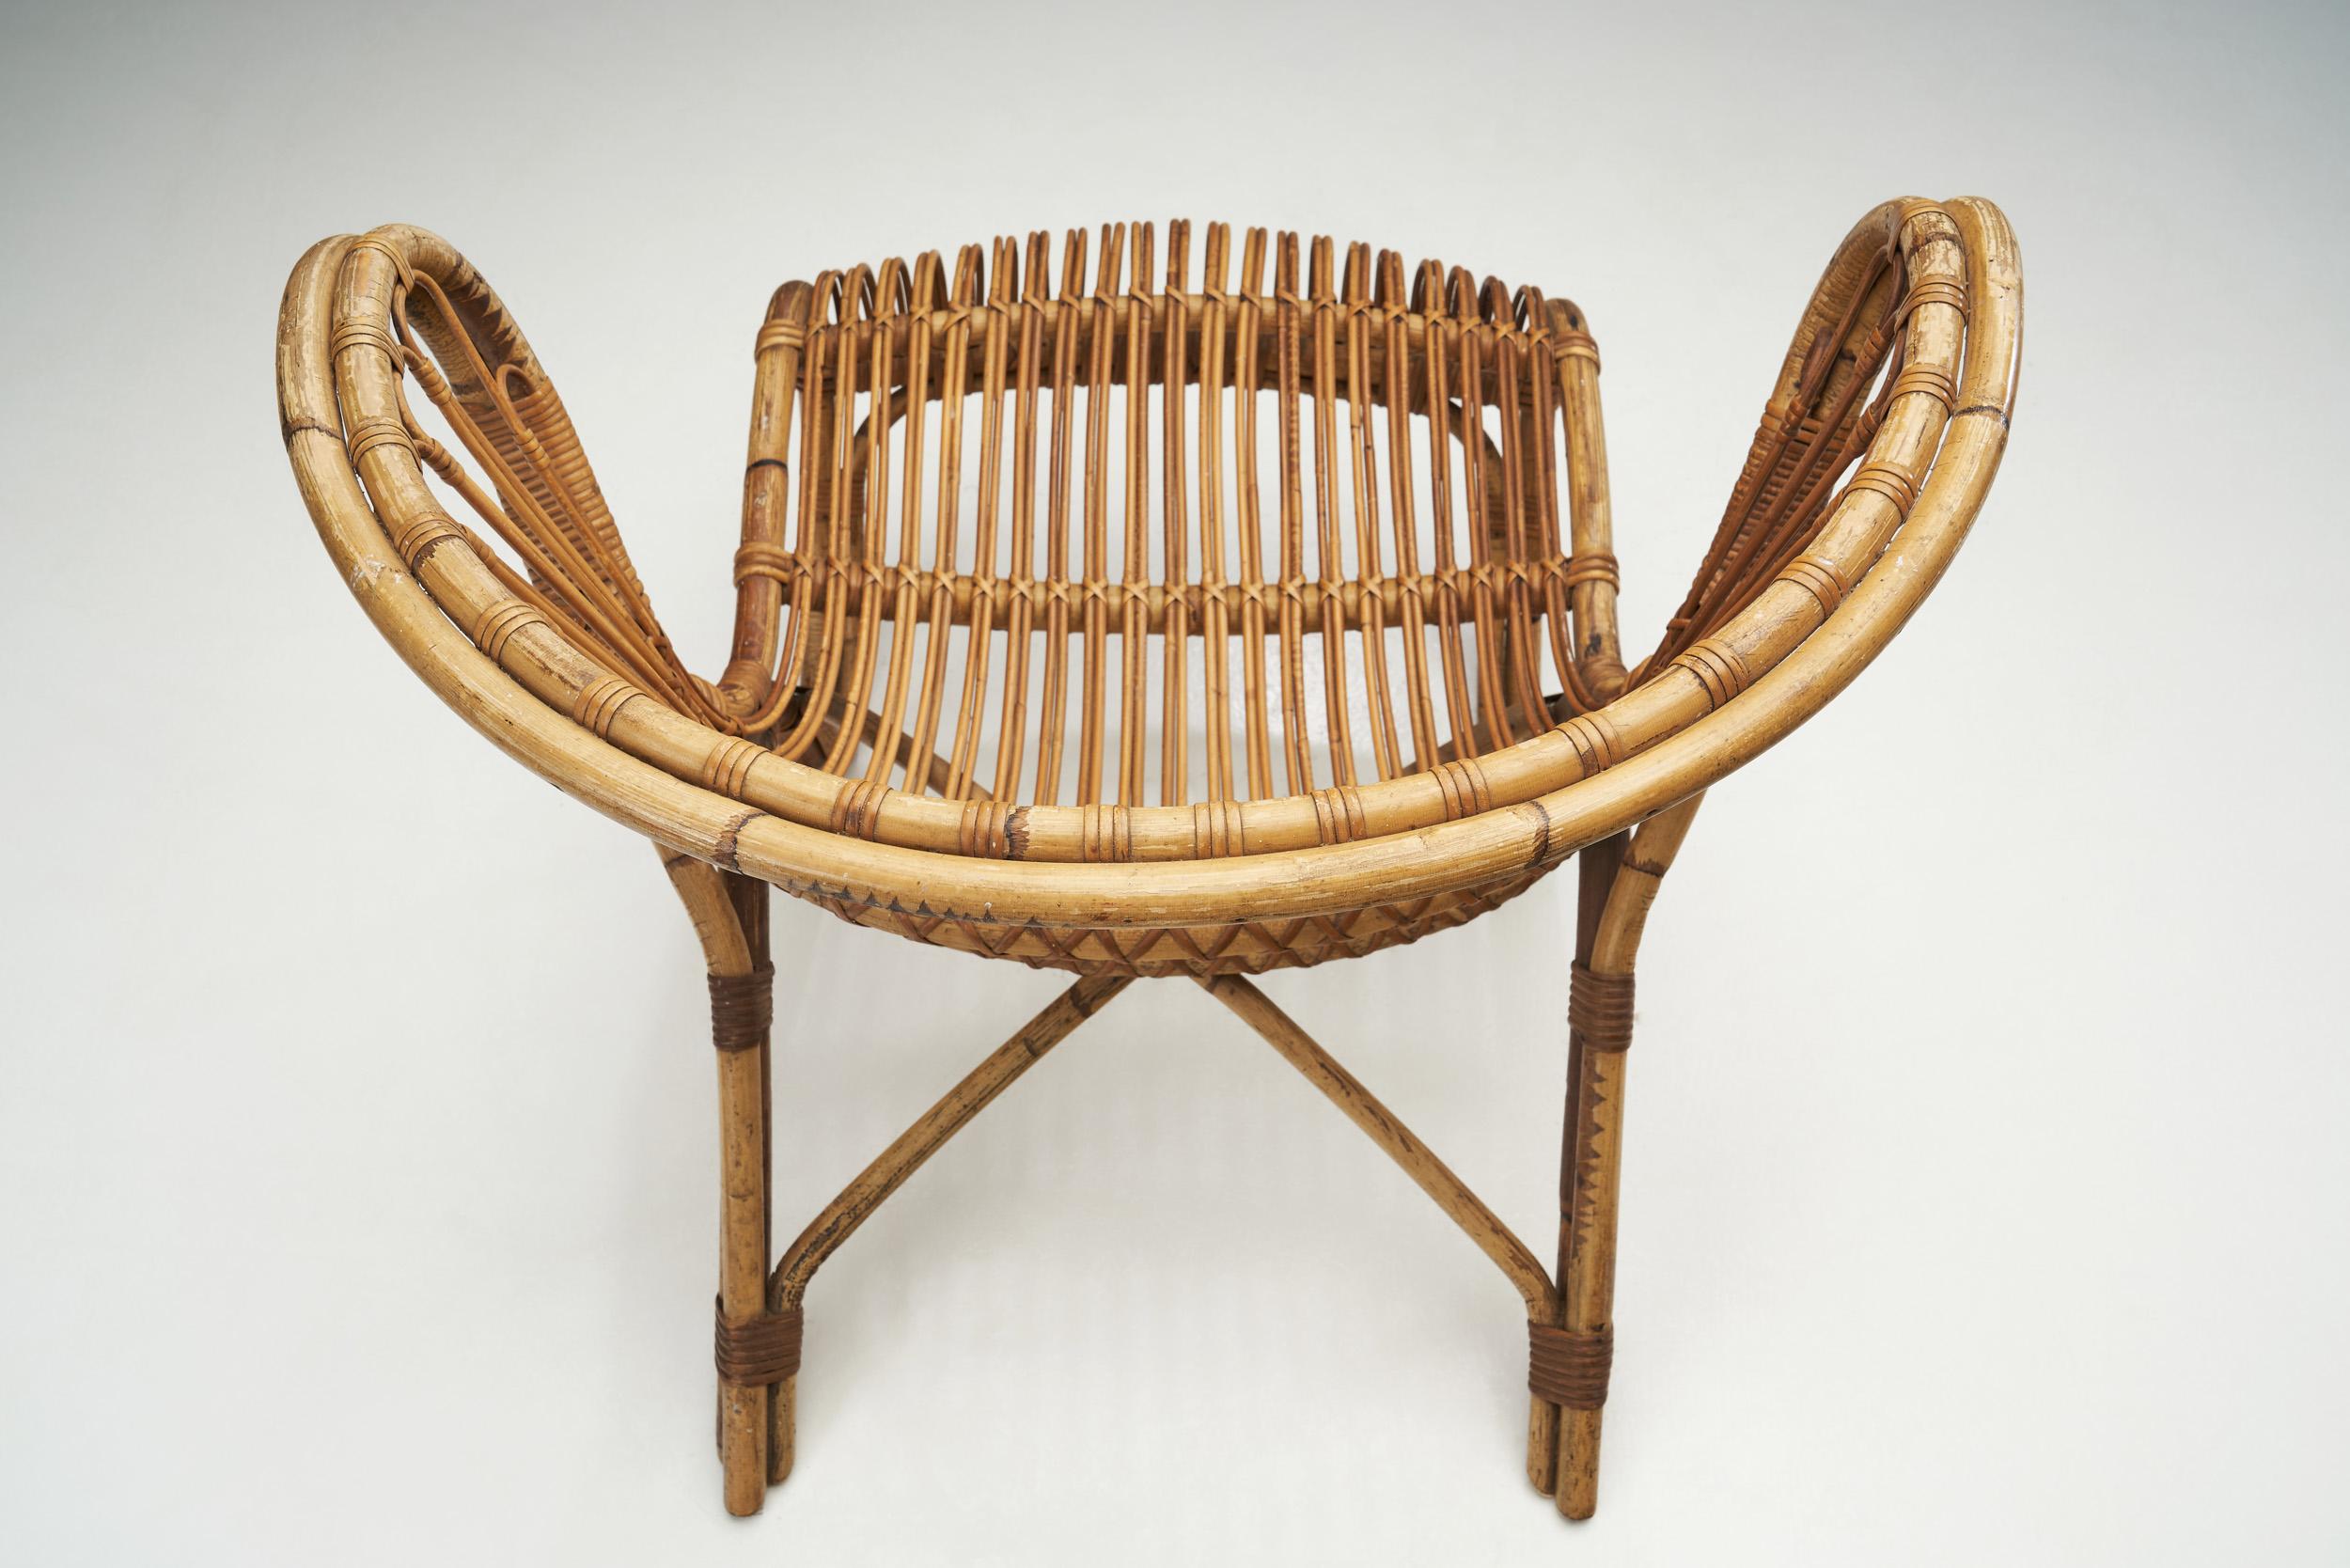 Rattan Viggo Boesen “Fox” Lounge Chair for E.V.A Nissen and Co., Denmark 1936